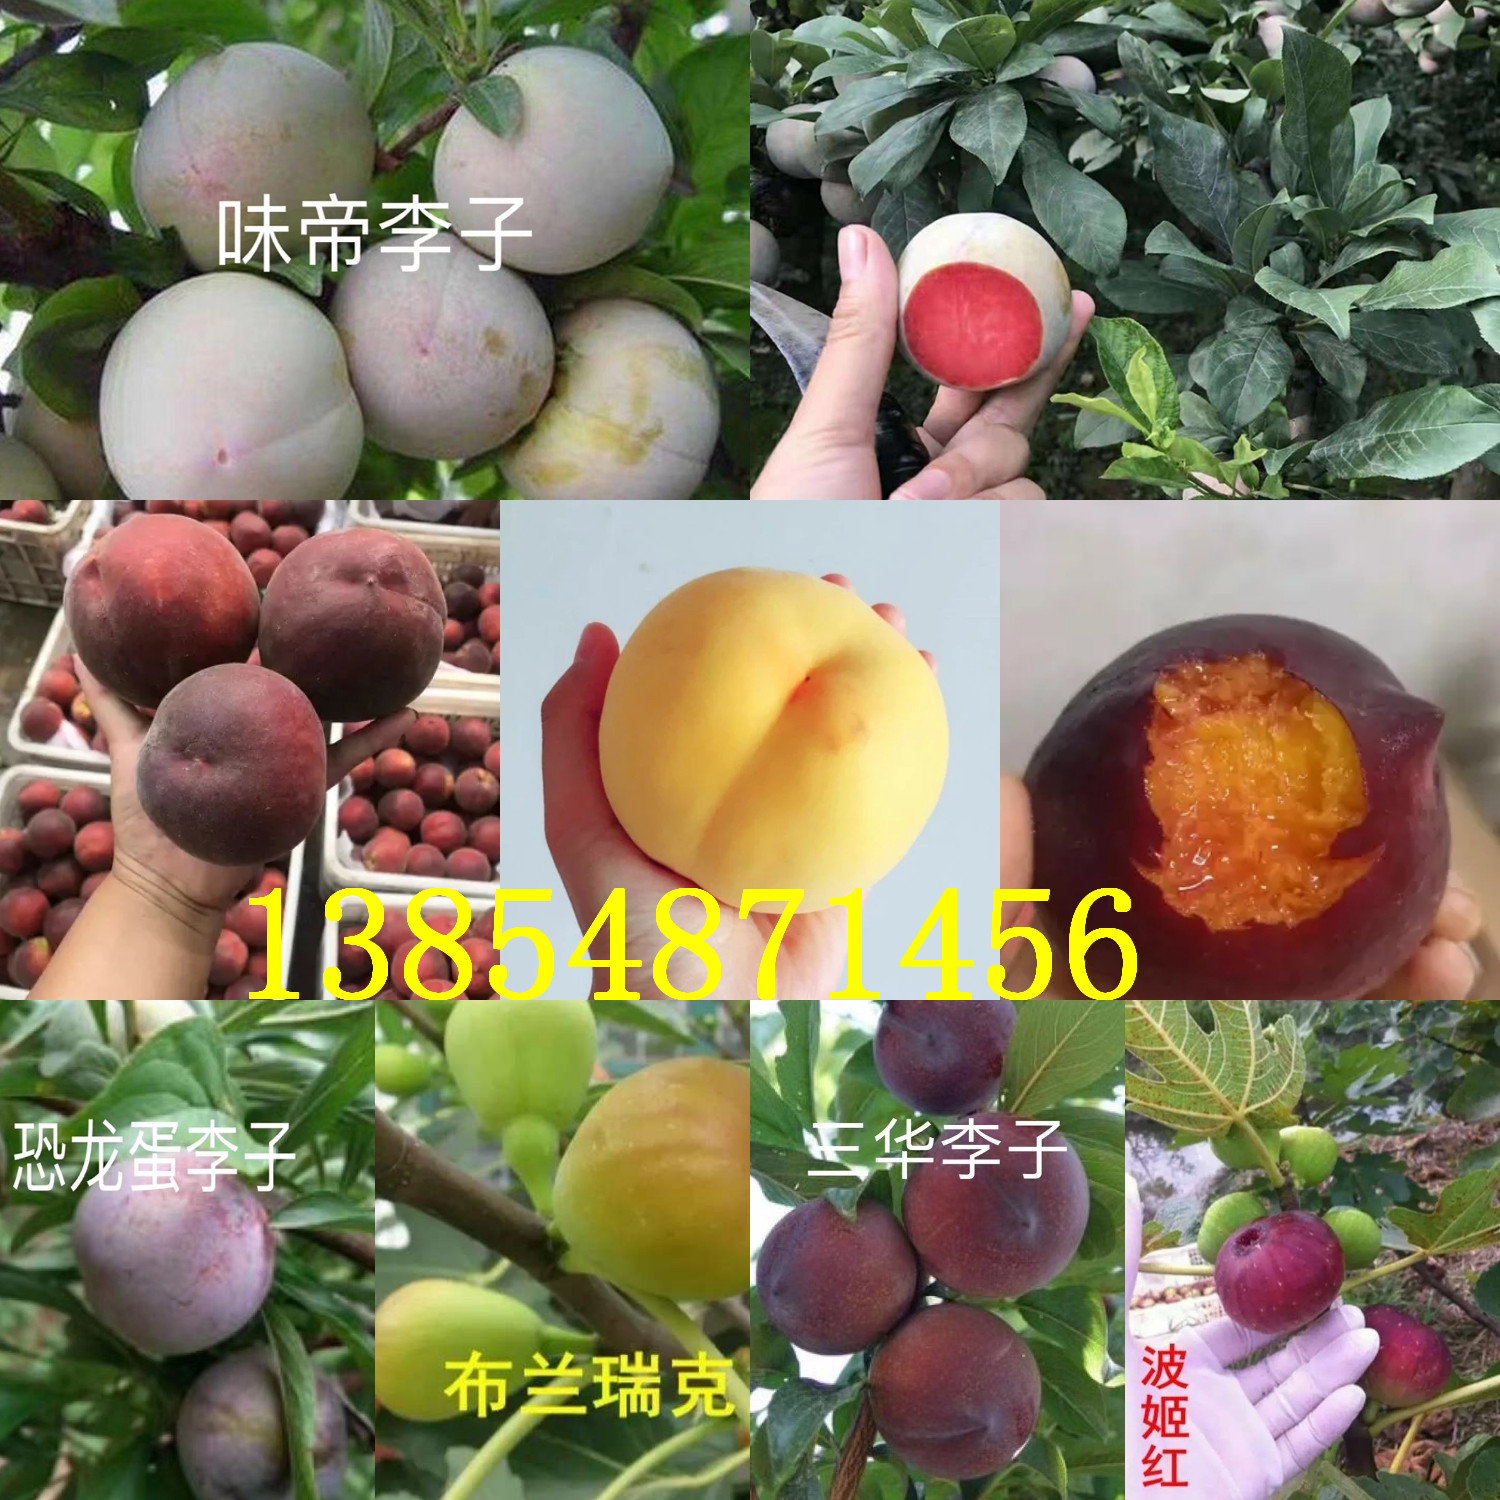 江苏常州青花椒树苗基地卖啥价格、果树苗哪里有售